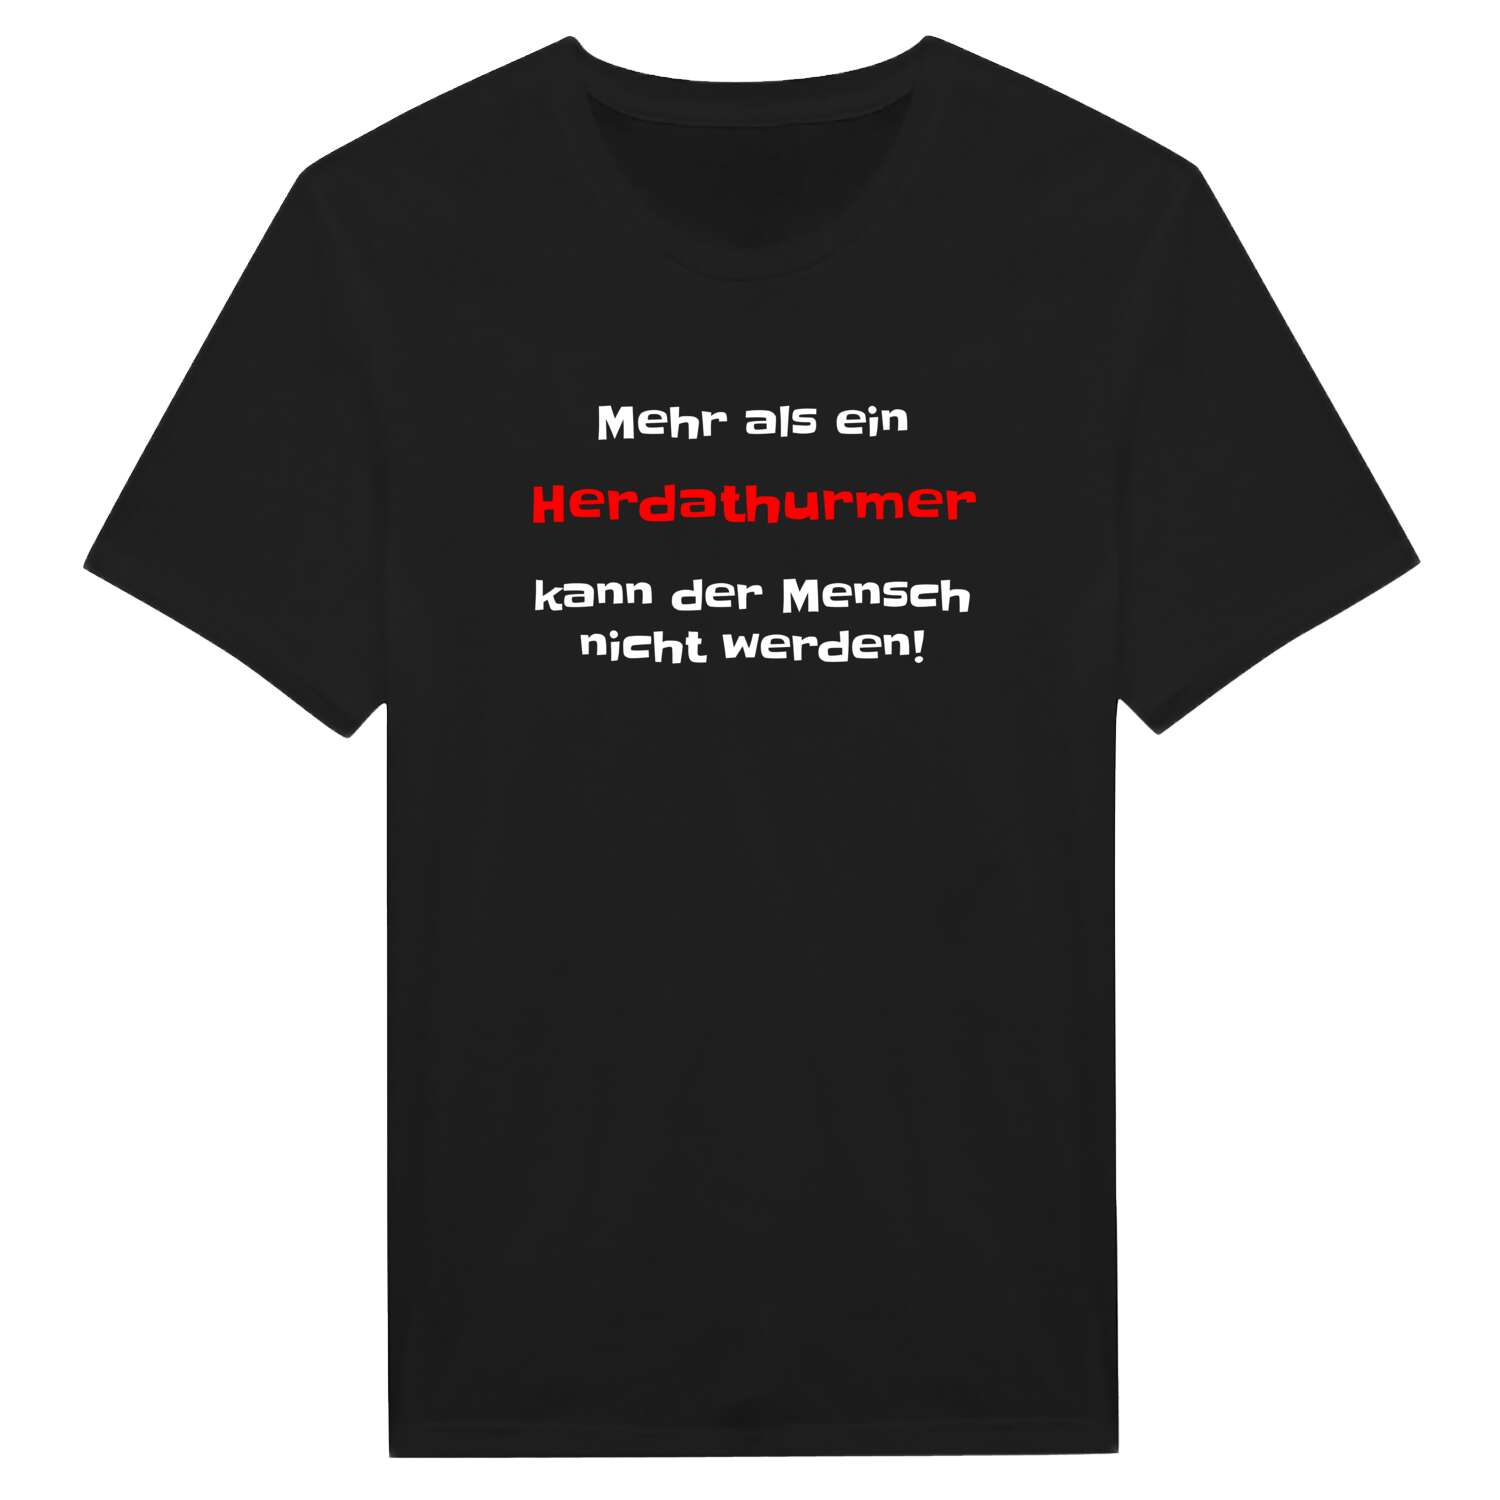 Herdathurm T-Shirt »Mehr als ein«